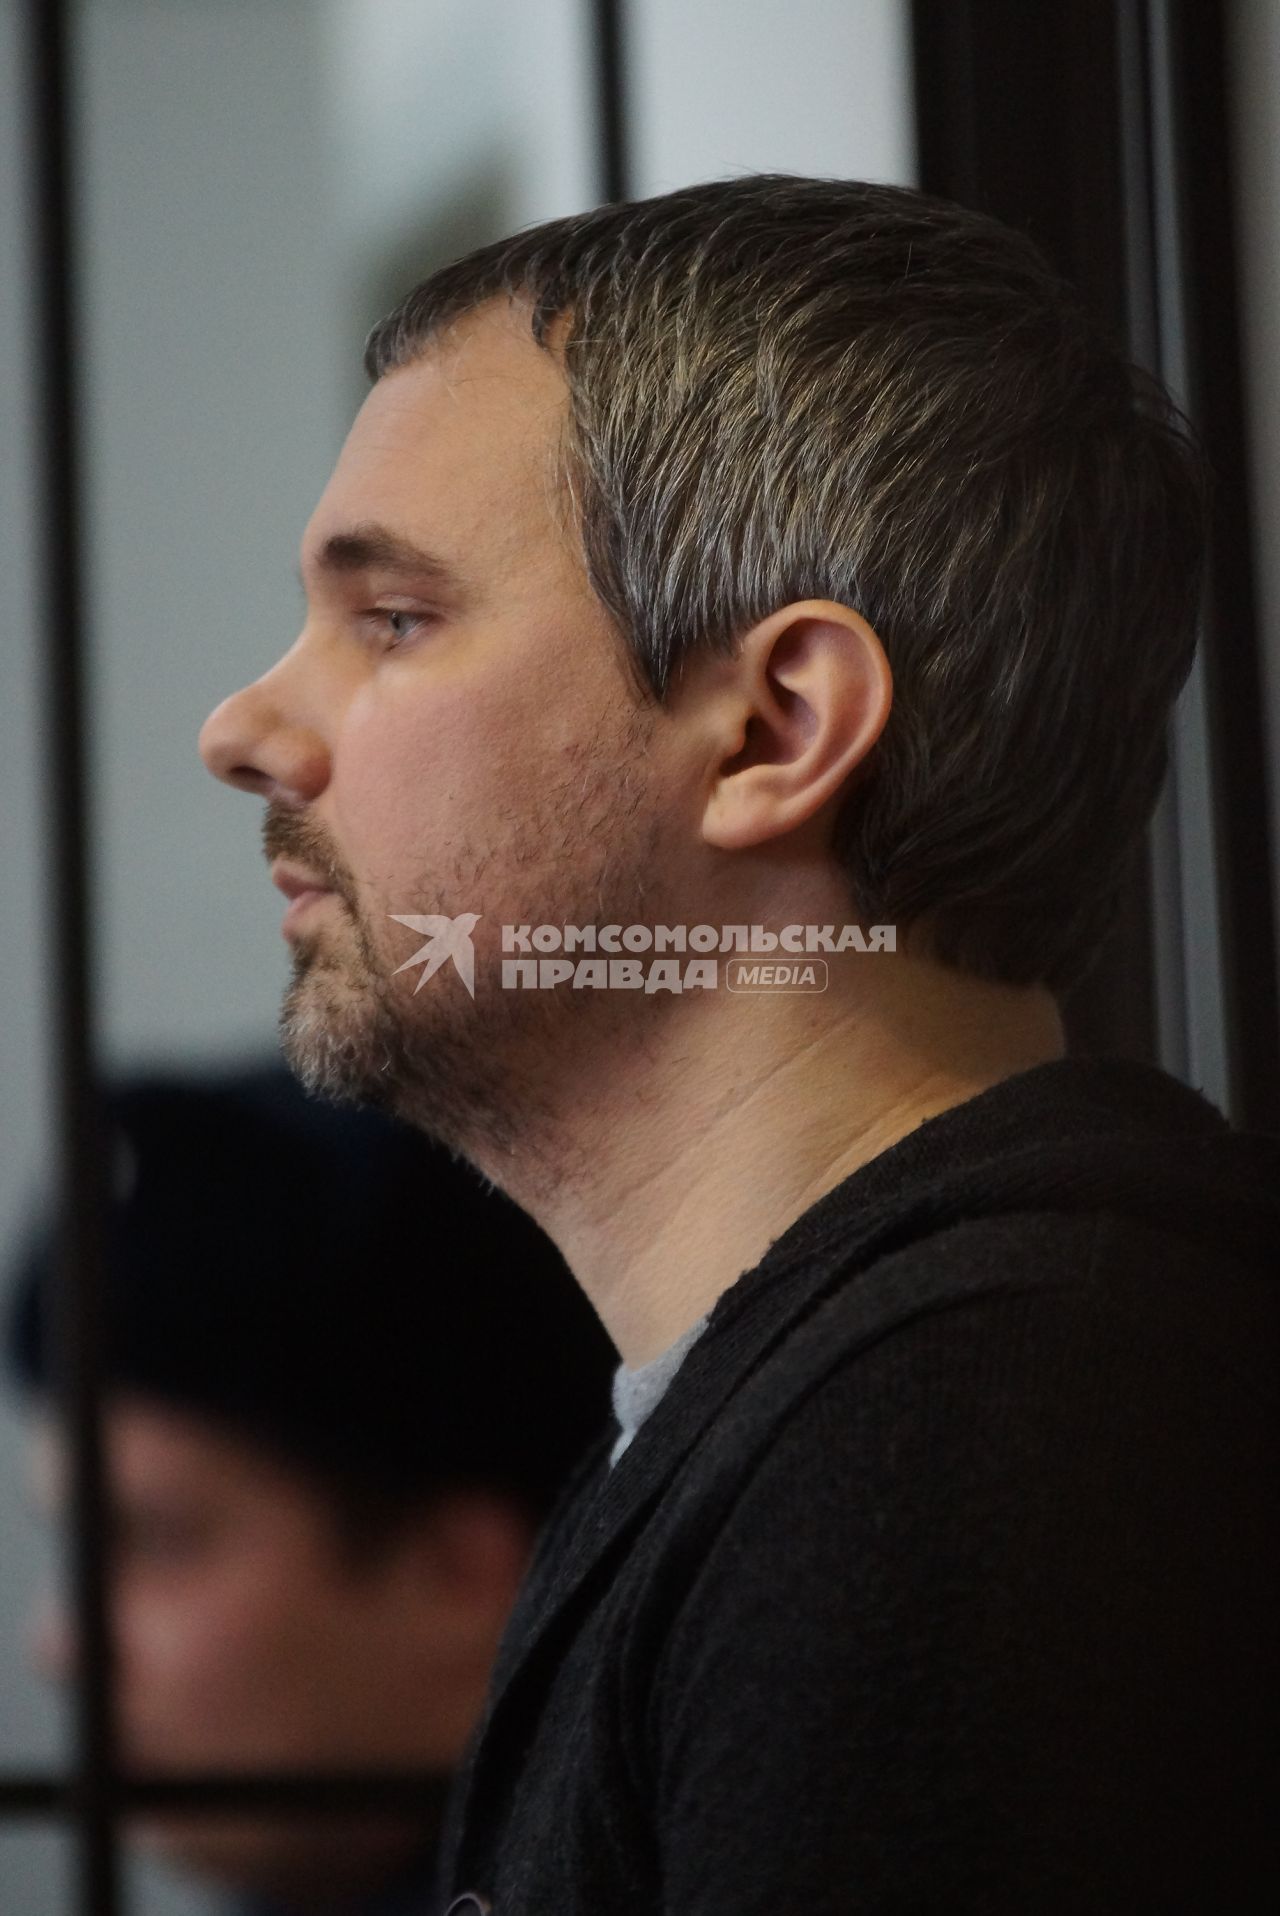 Судебный процесс над Екатеринбургским фотографом Дмитрием Лошагиным, обвиняемом в убийстве своей жены, модели Юлии Прокопьевой